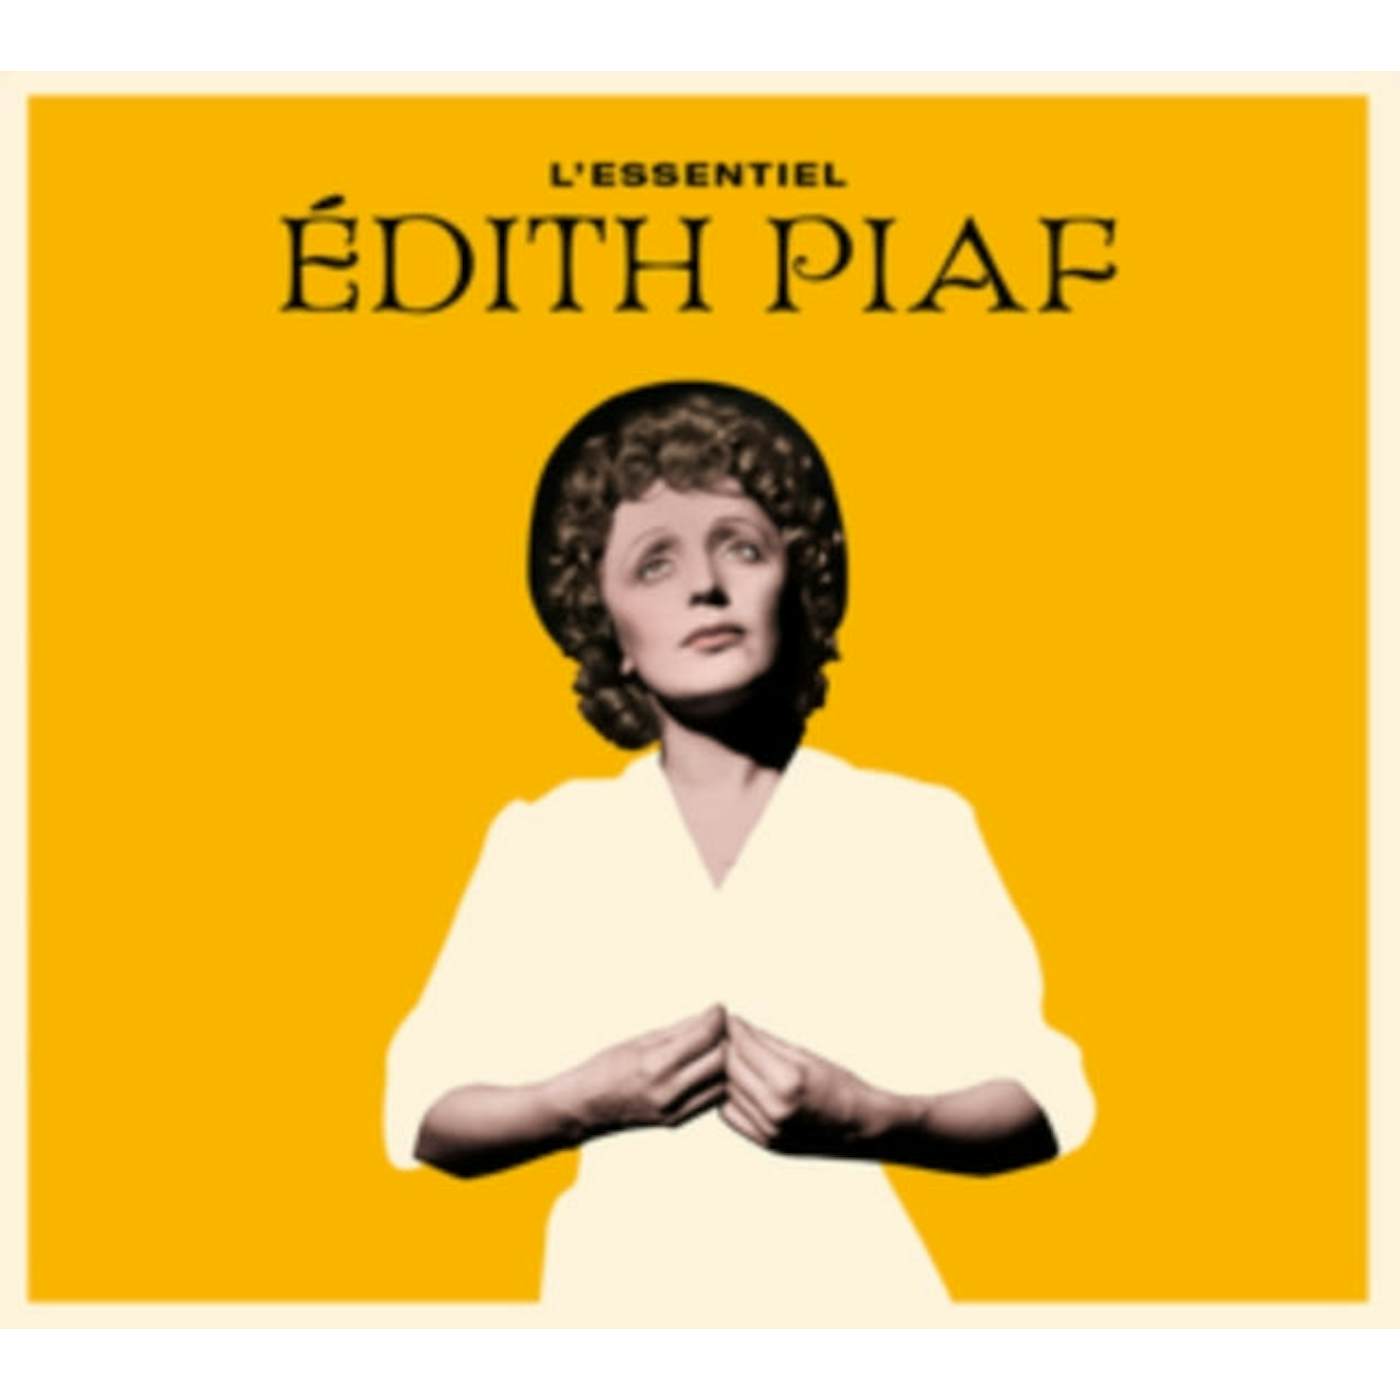 Édith Piaf CD - L'essentiel De Edith Piaf (26 Top Tracks)